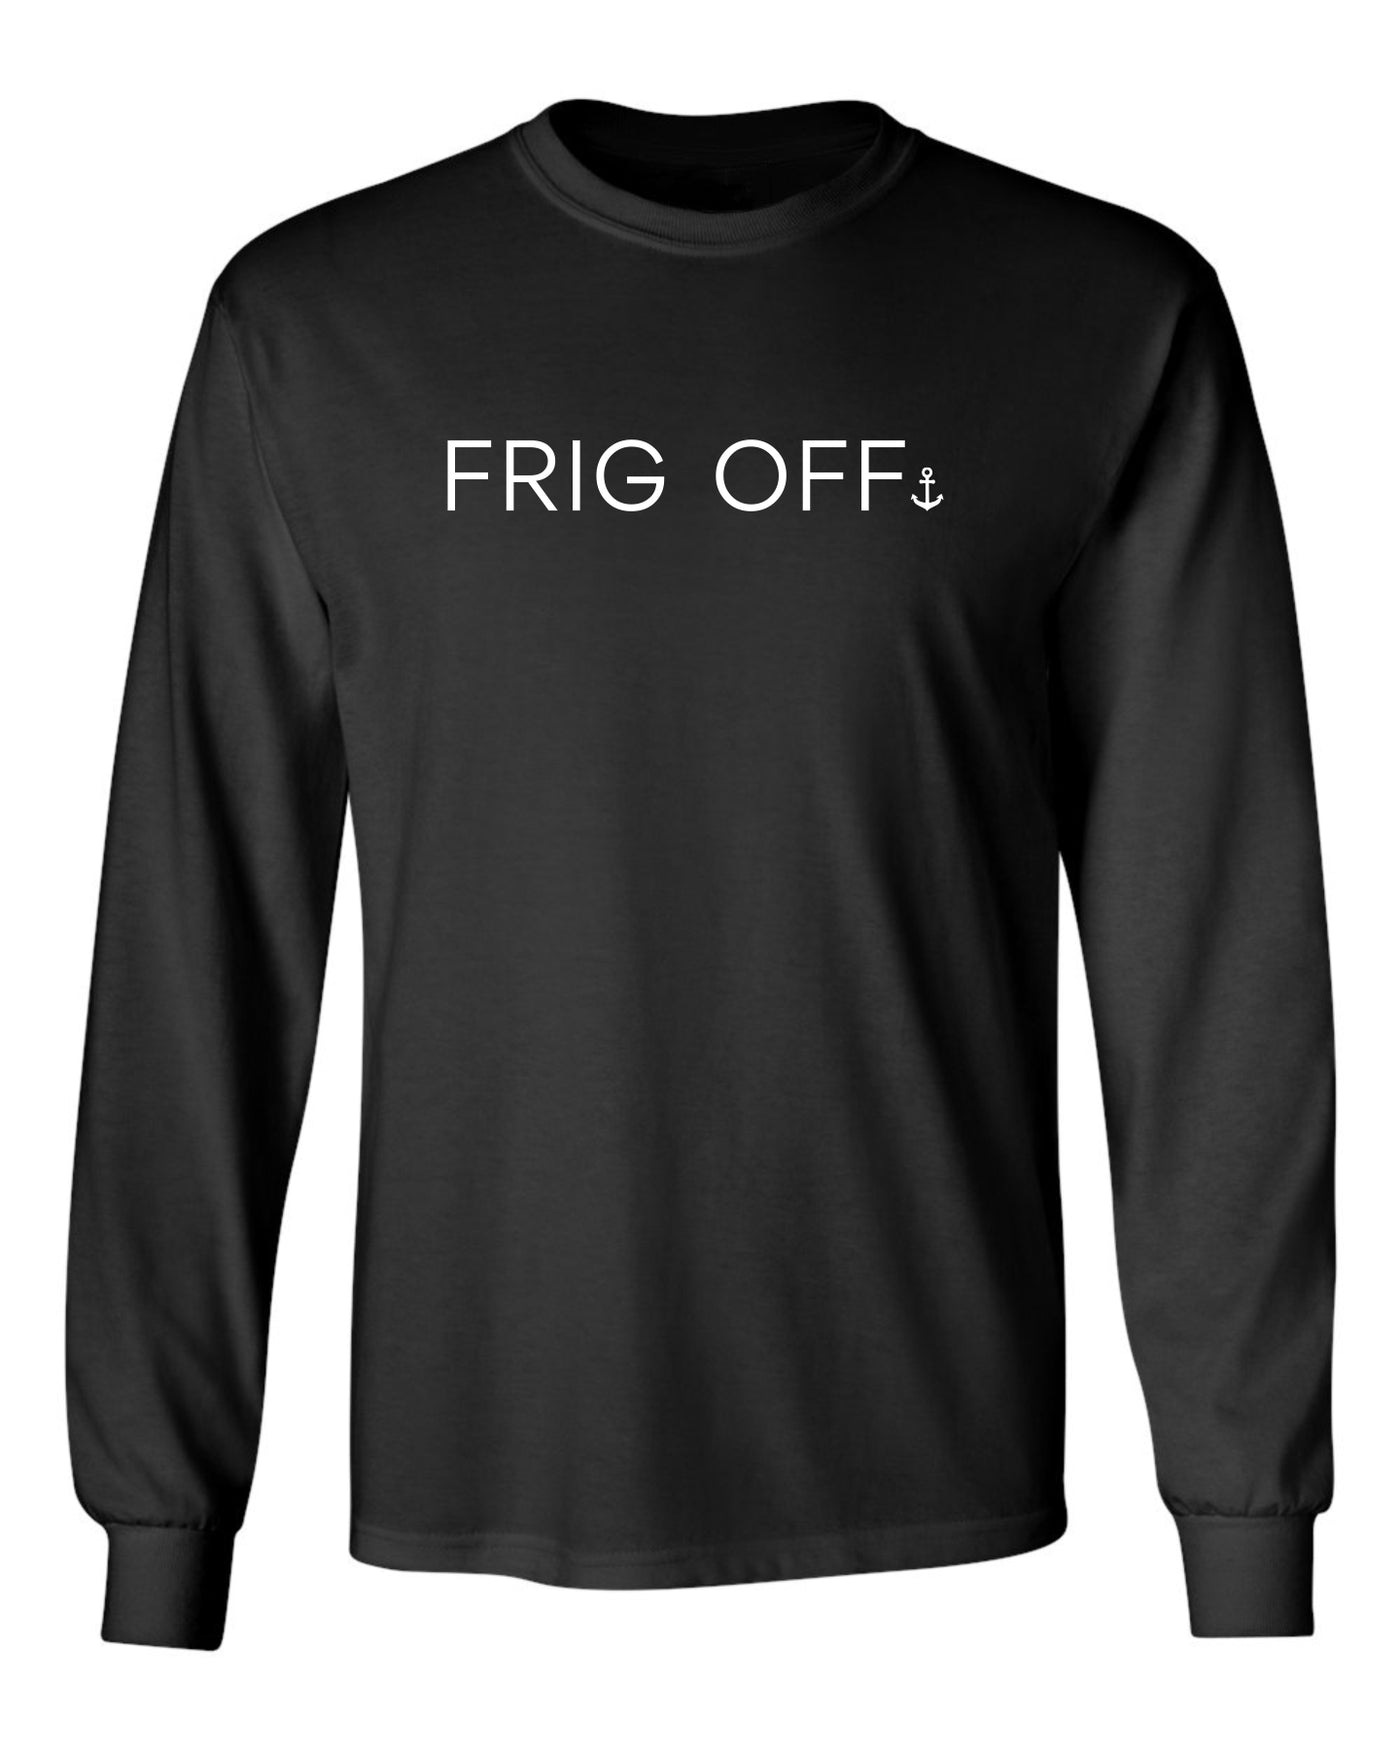 "Frig Off" Unisex Long Sleeve Shirt